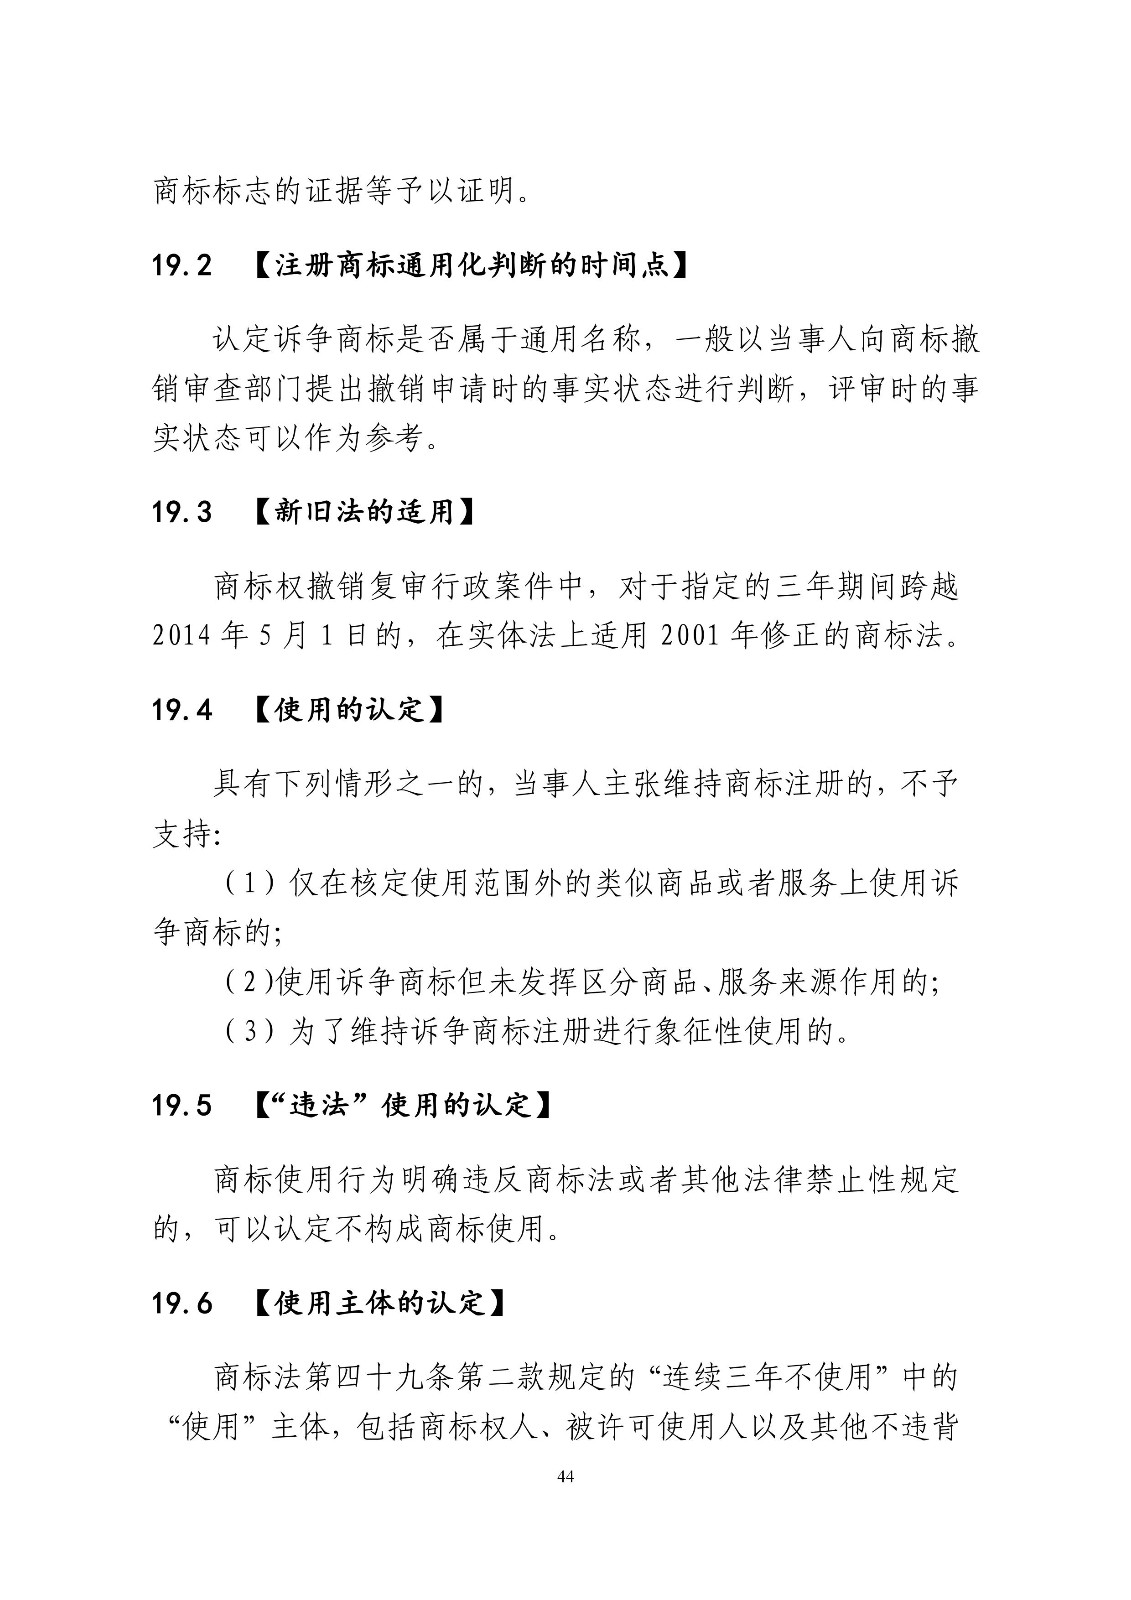 北京法院制定《商标授权确权行政案件审理指南》